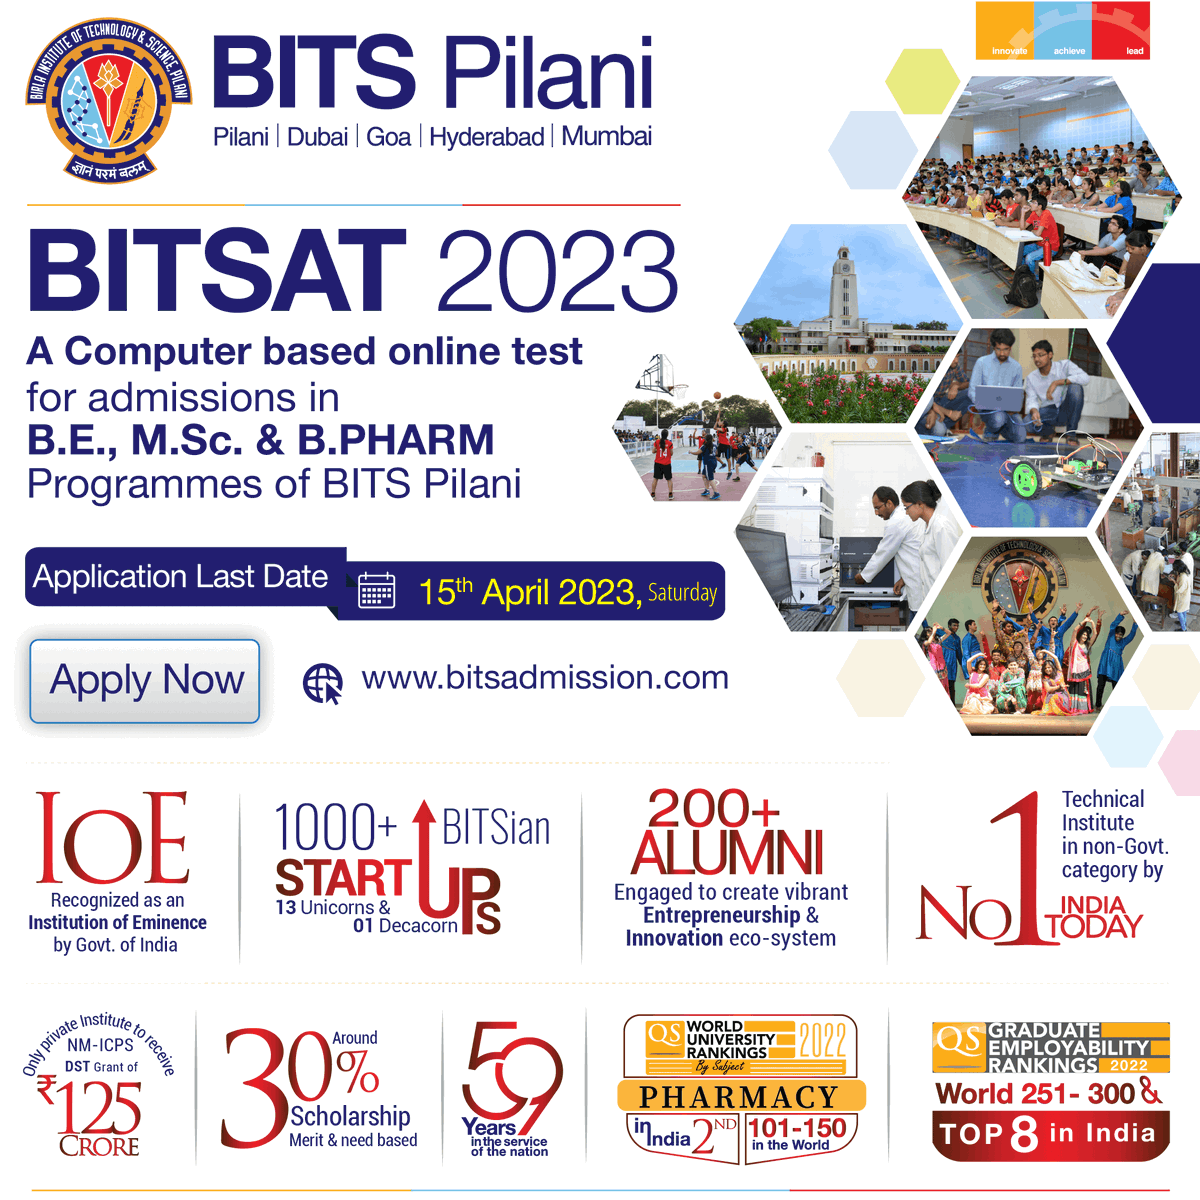 BITSAT-2023 registration date extended until 15-APR-2023

More Details : bitsadmission.com

#Admissions #BITSAT2023 #BITSAT #bitsadmission #admissionsopen2023 #admissionopen2023_2024 #admissionsopen2023_24